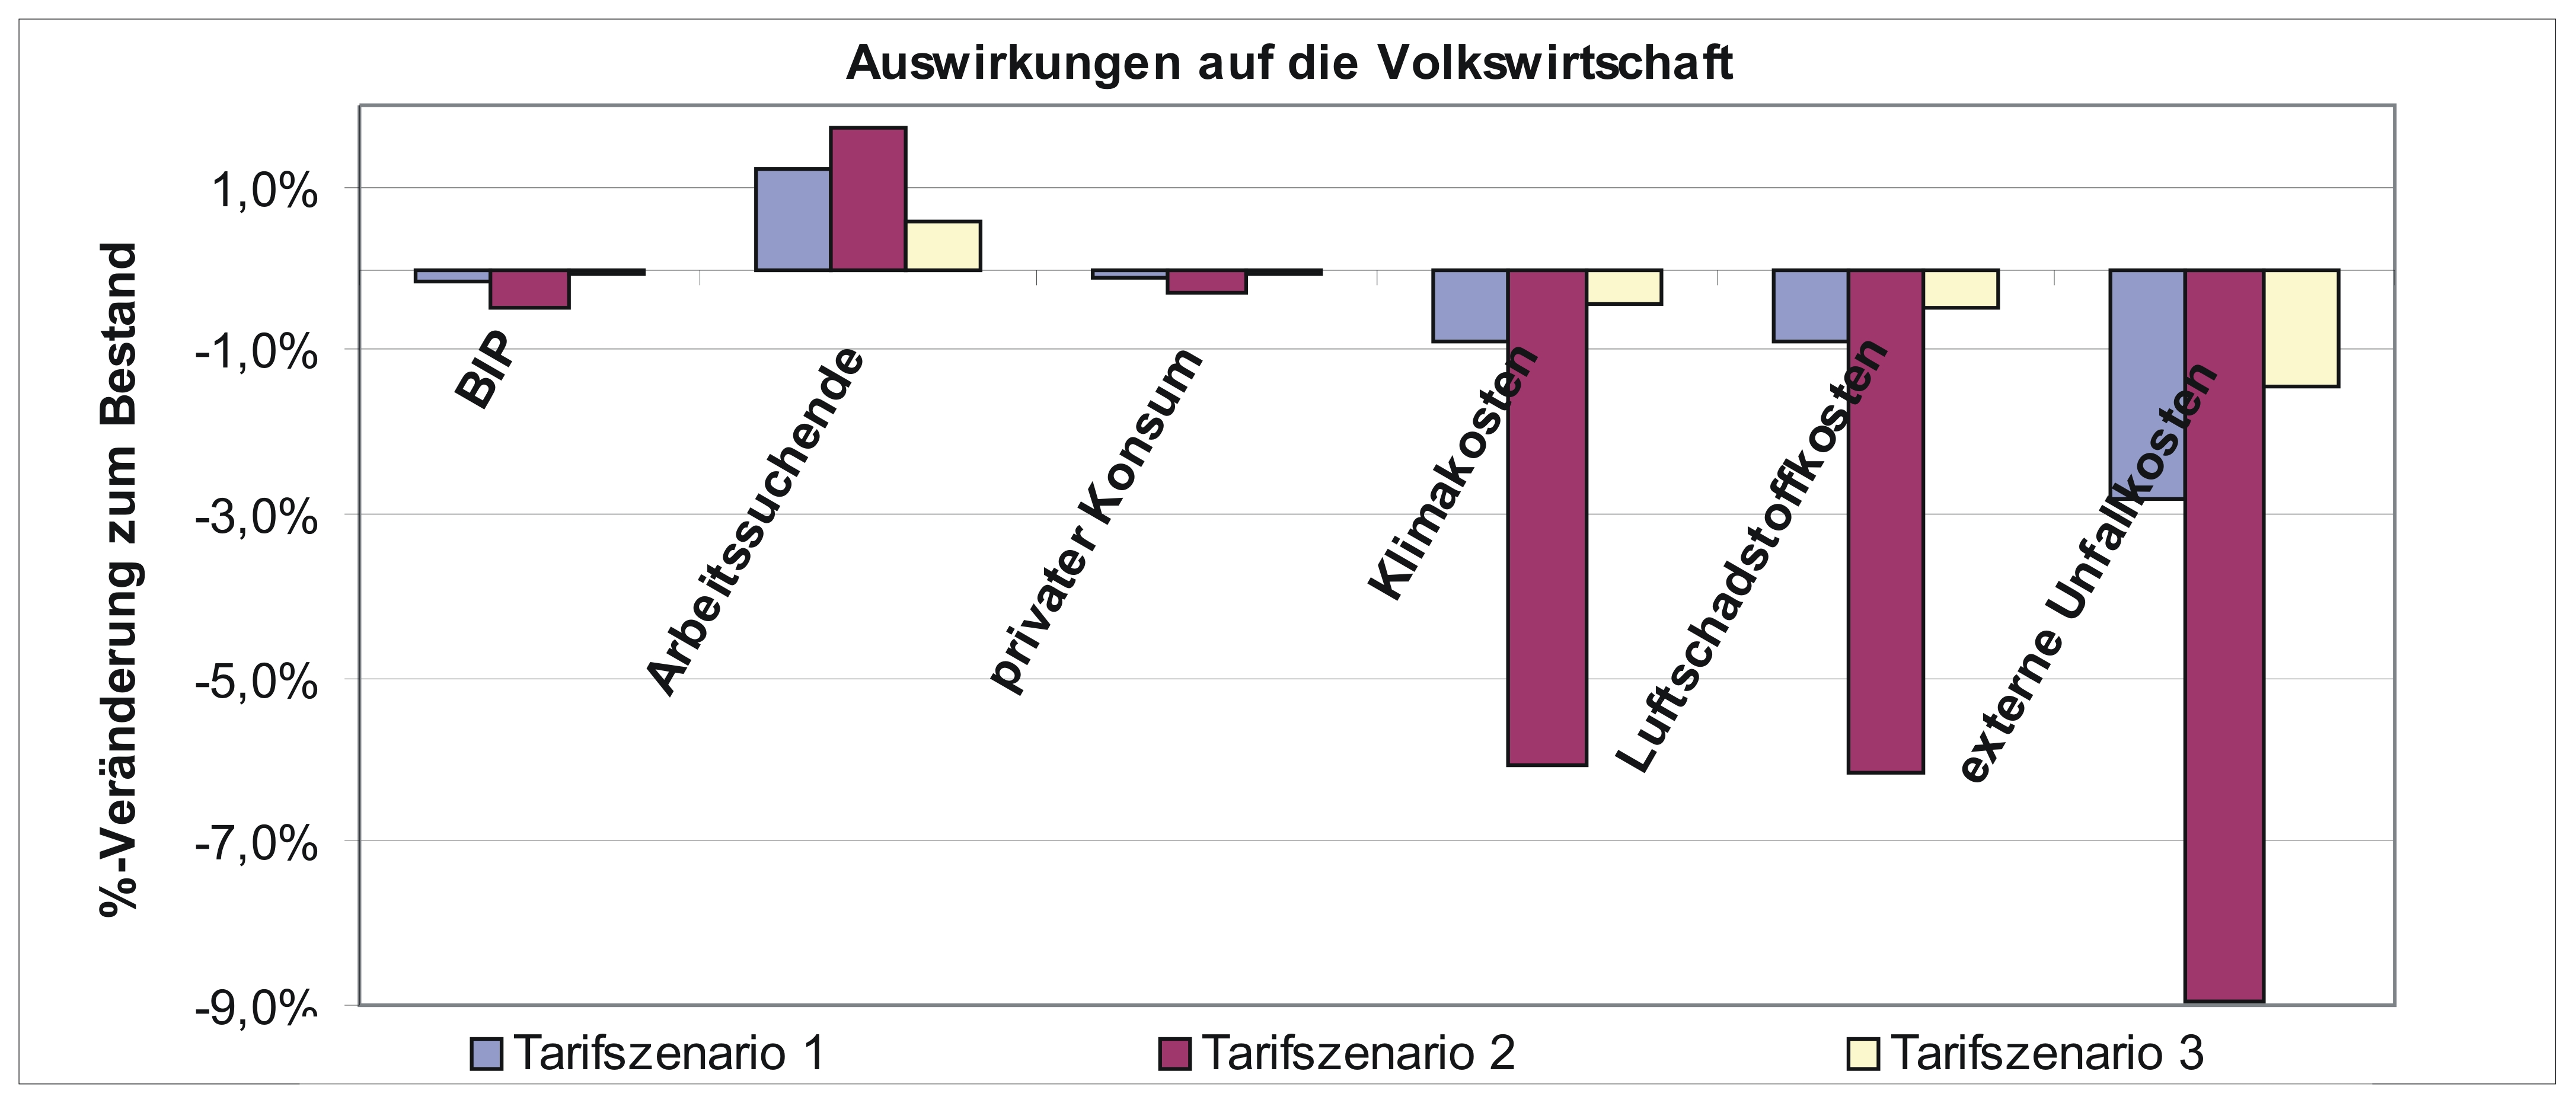 Flächendeckende Lkw-Maut - Verkehrliche und ökonomische Auswirkungen einer flächendeckenden Lkw-Maut in Österreich